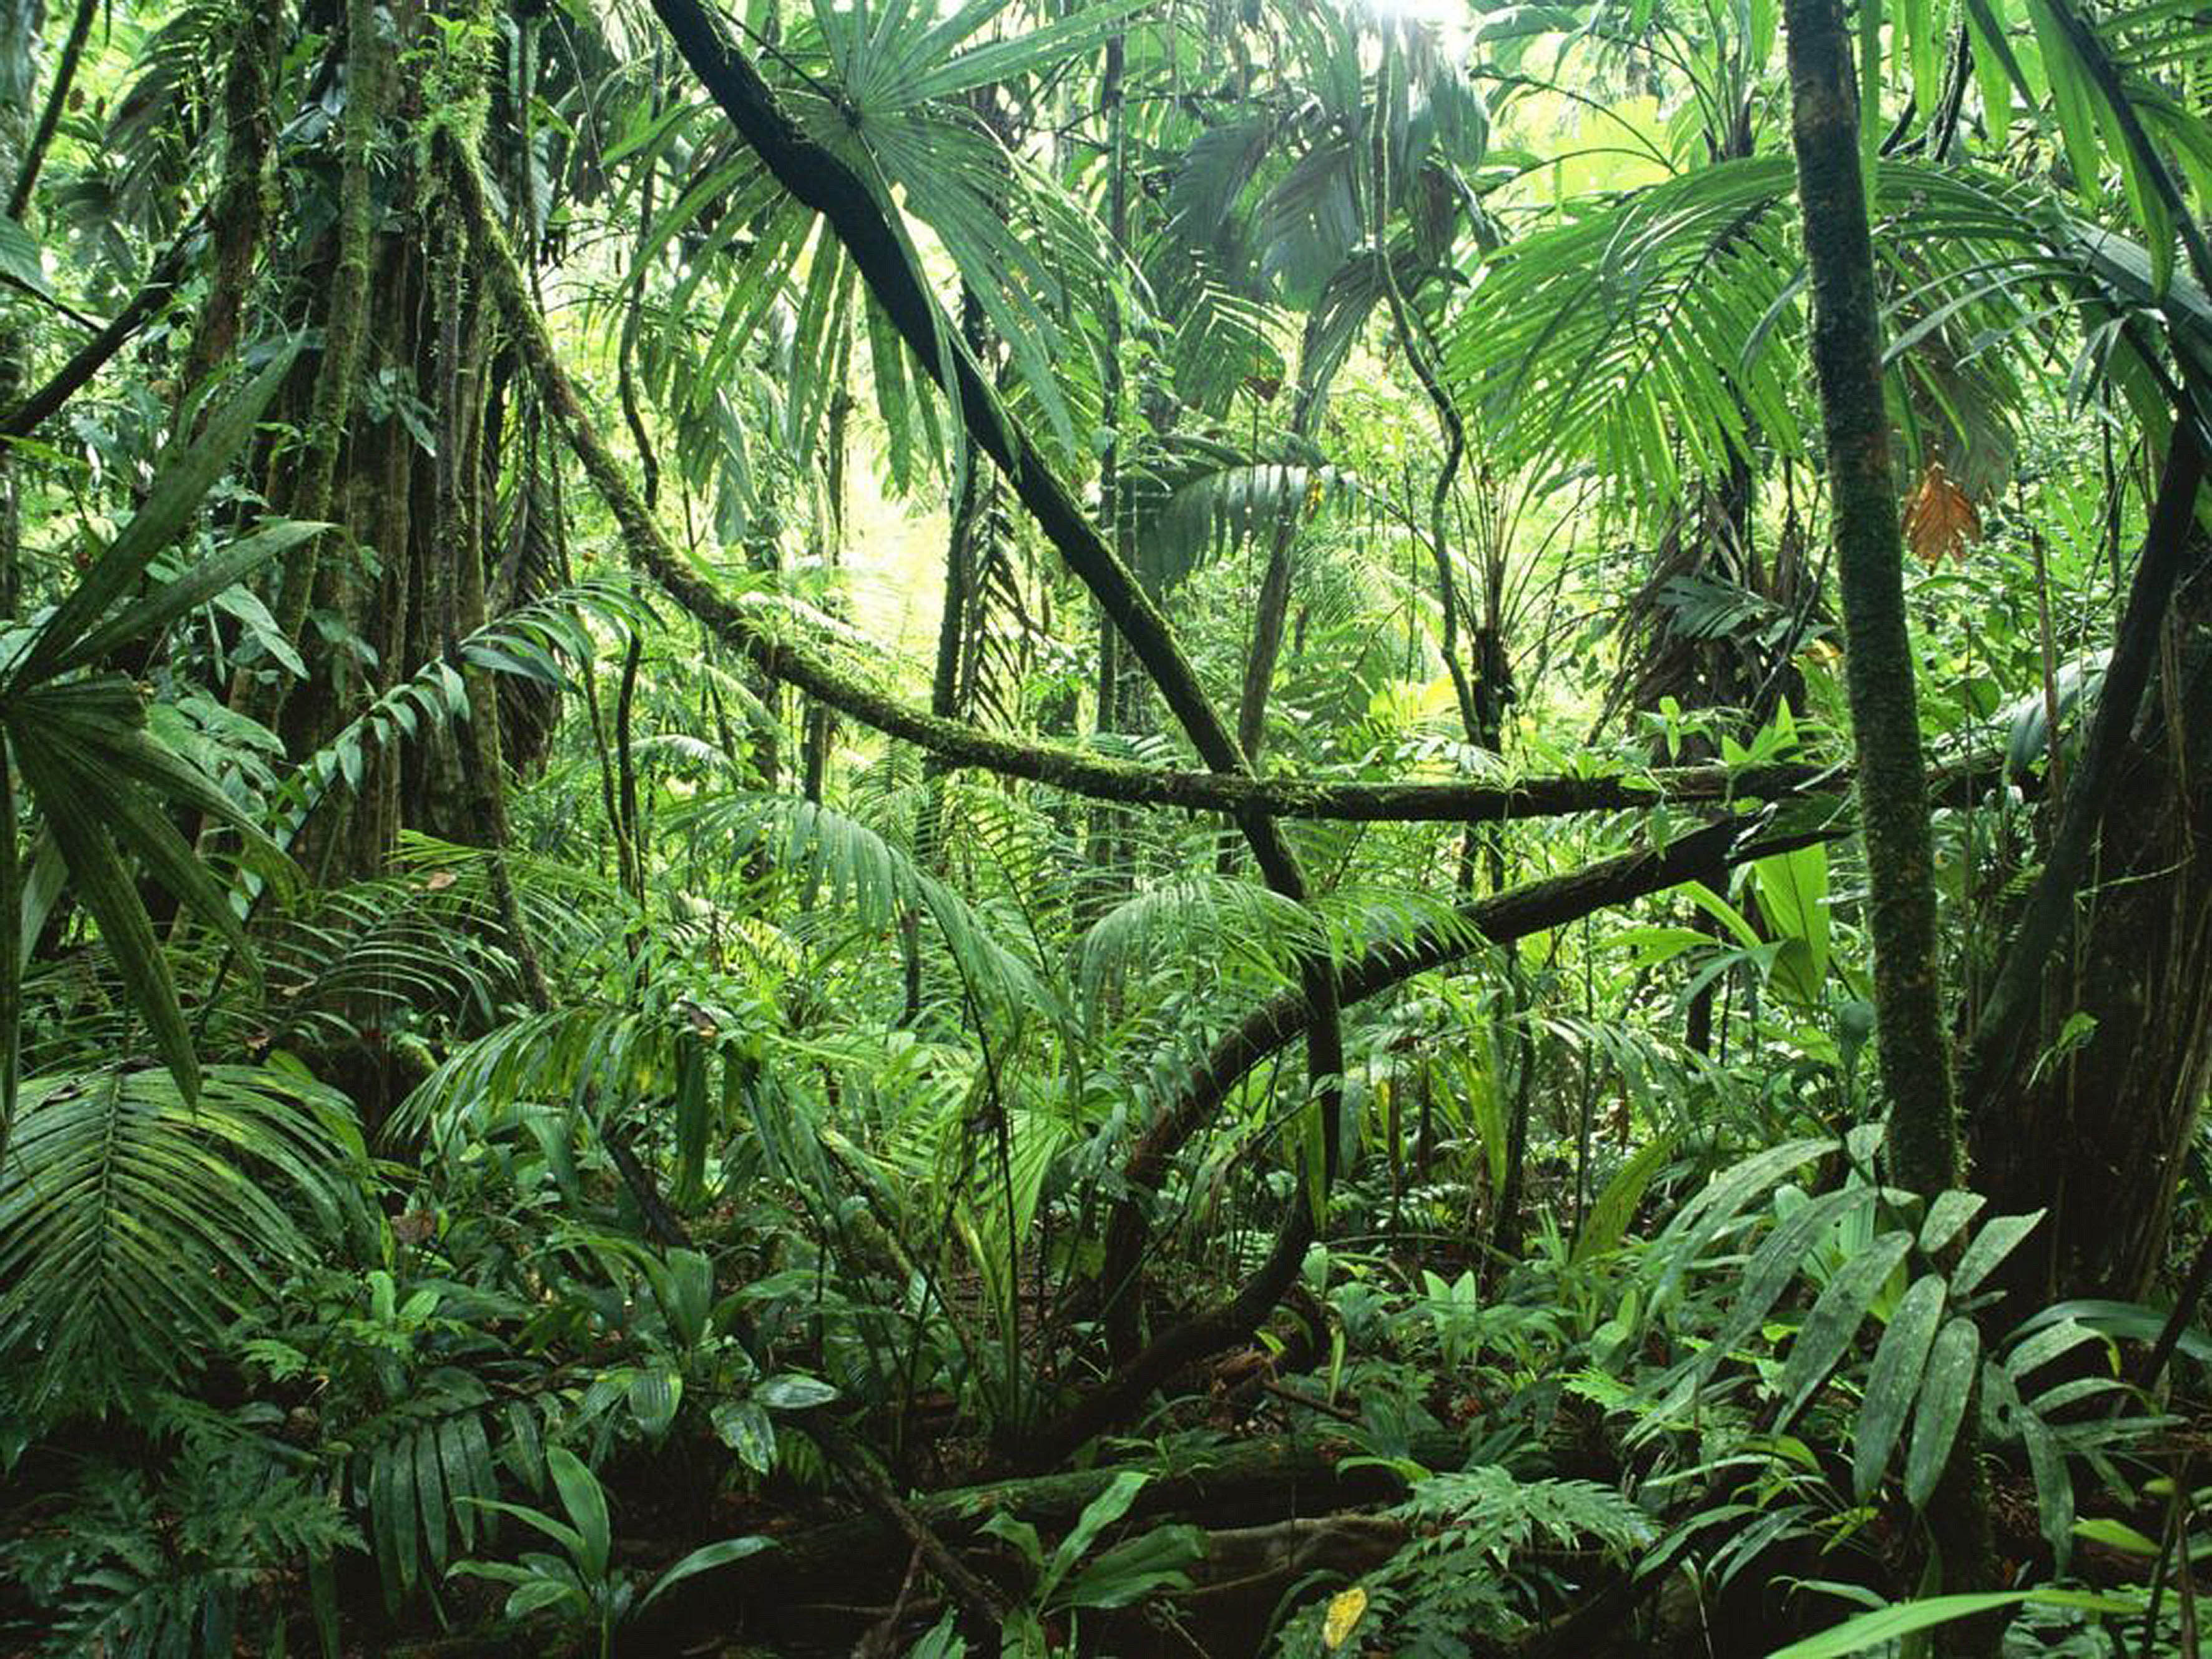 Bosques Tropicales son los Ecosistemas Terrestres más Biodiversos del Planeta